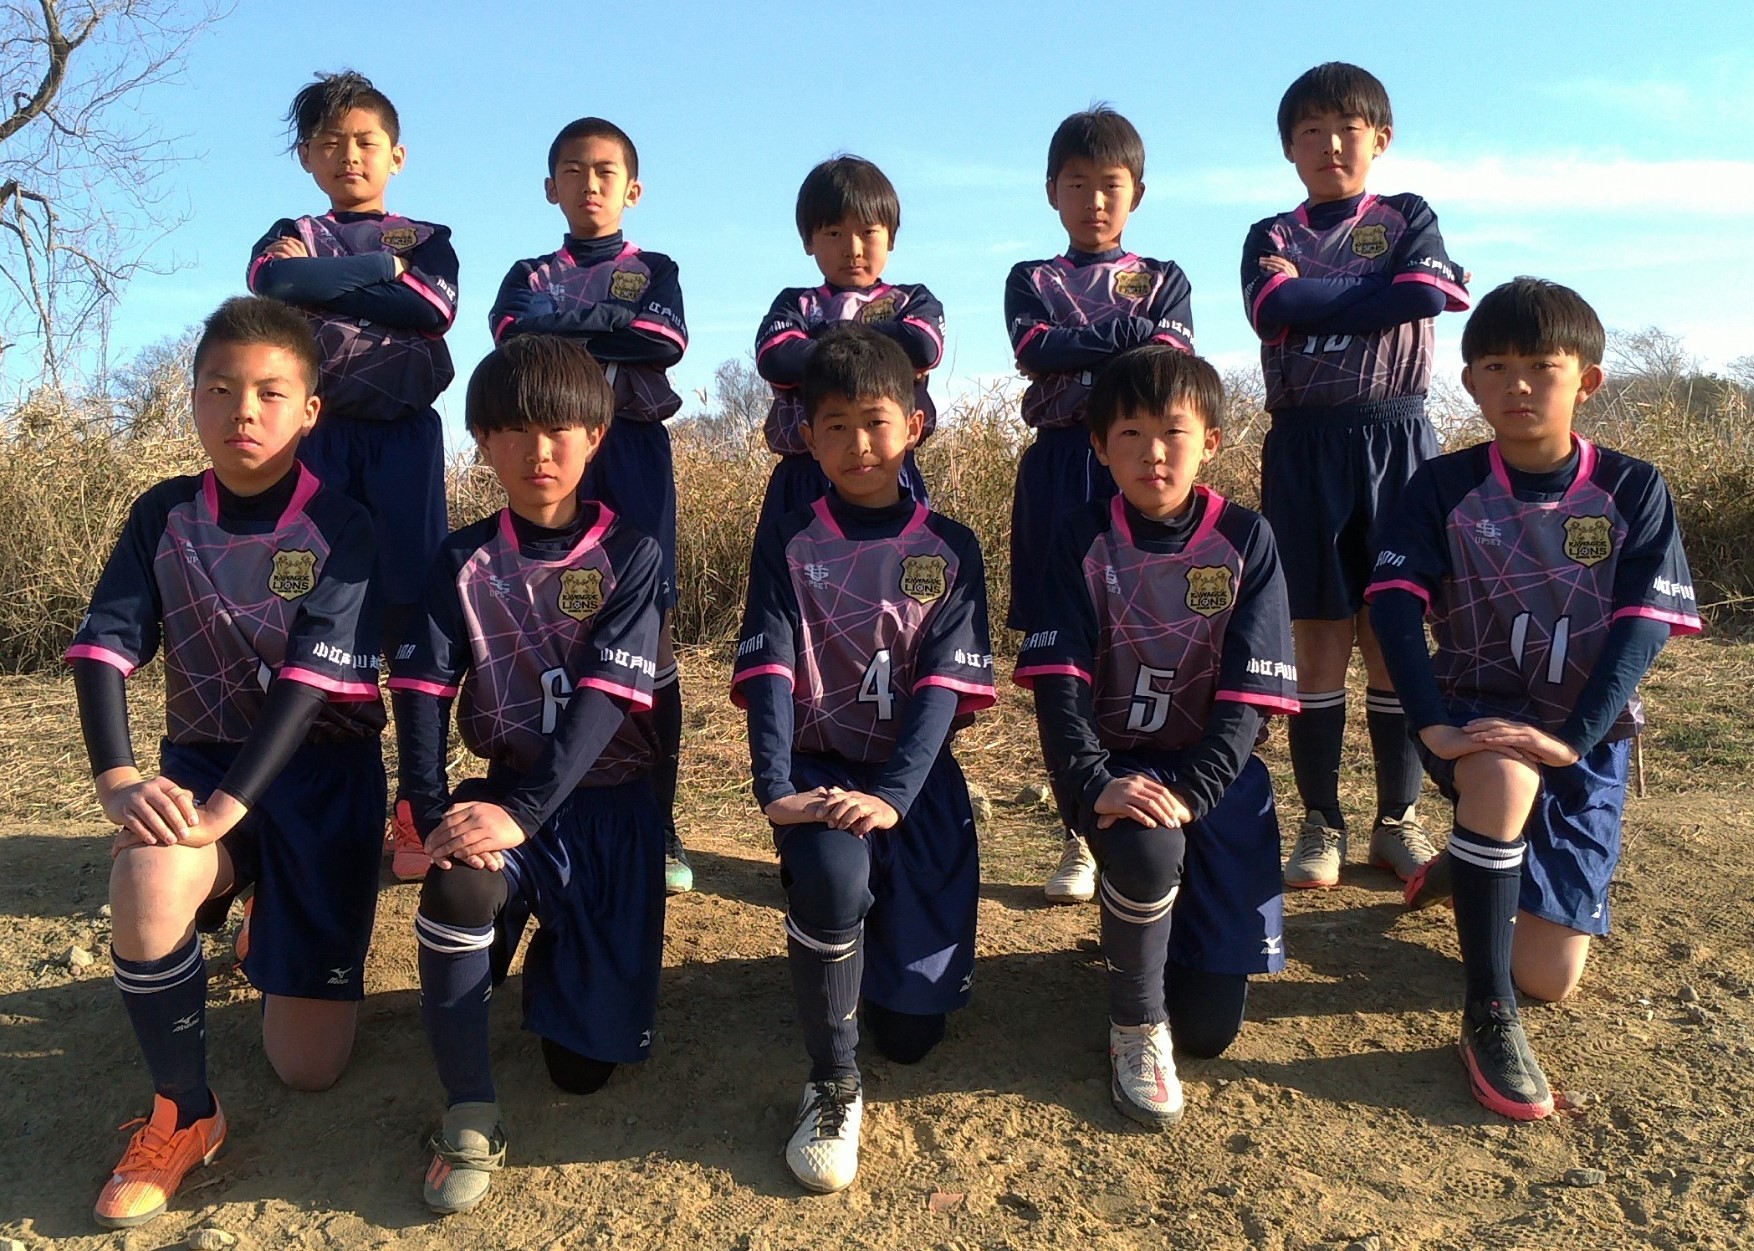 川越ライオンズサッカー少年団 埼玉県川越市の少年サッカーチーム